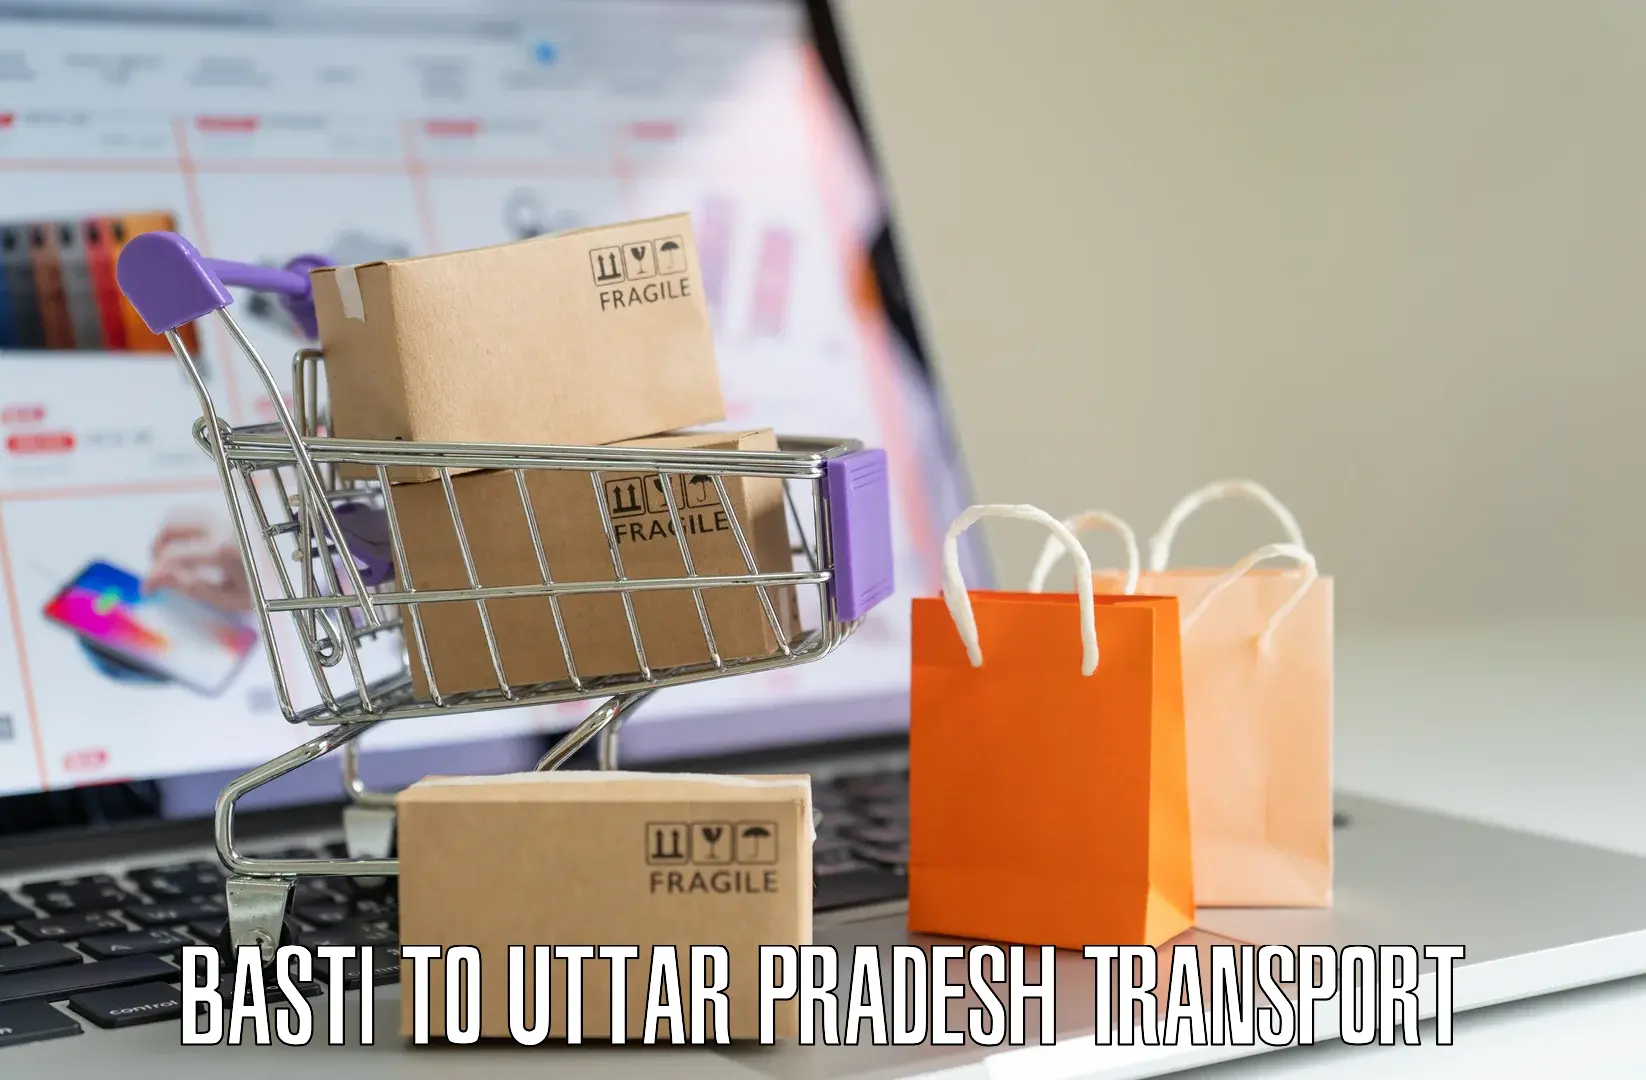 Online transport service Basti to Ramnagar Varanasi